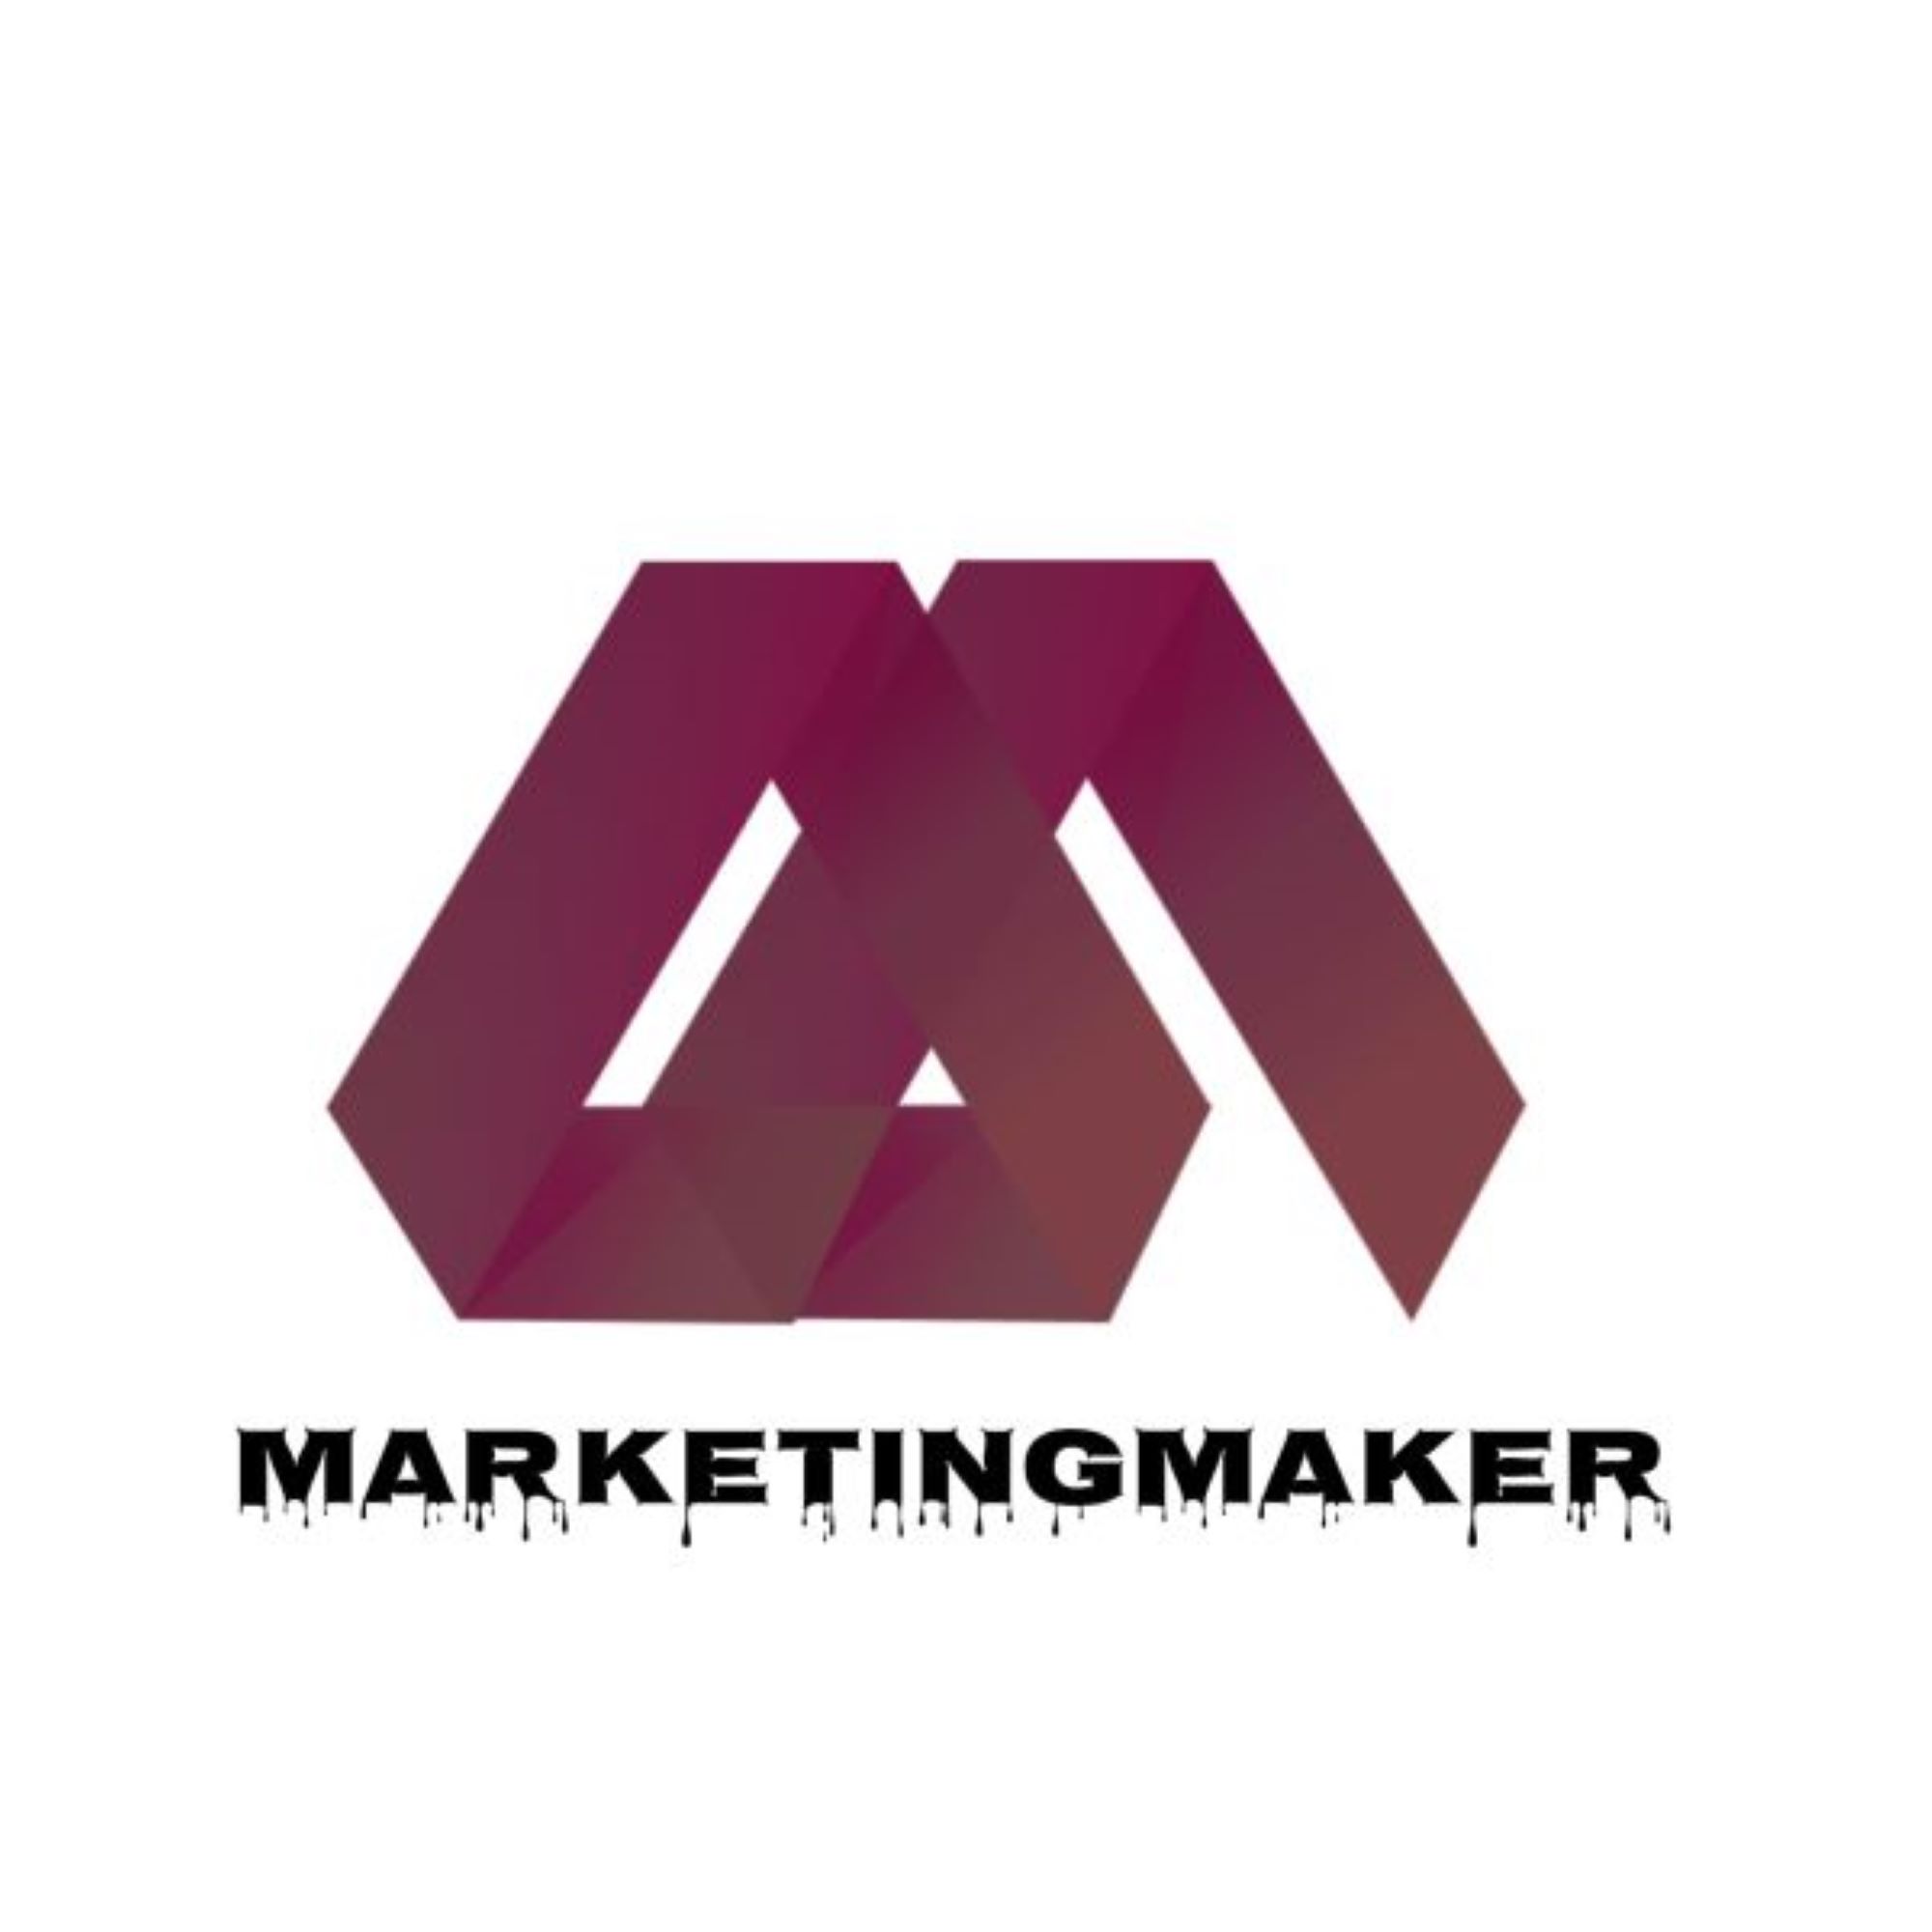 Marketing Maker KG